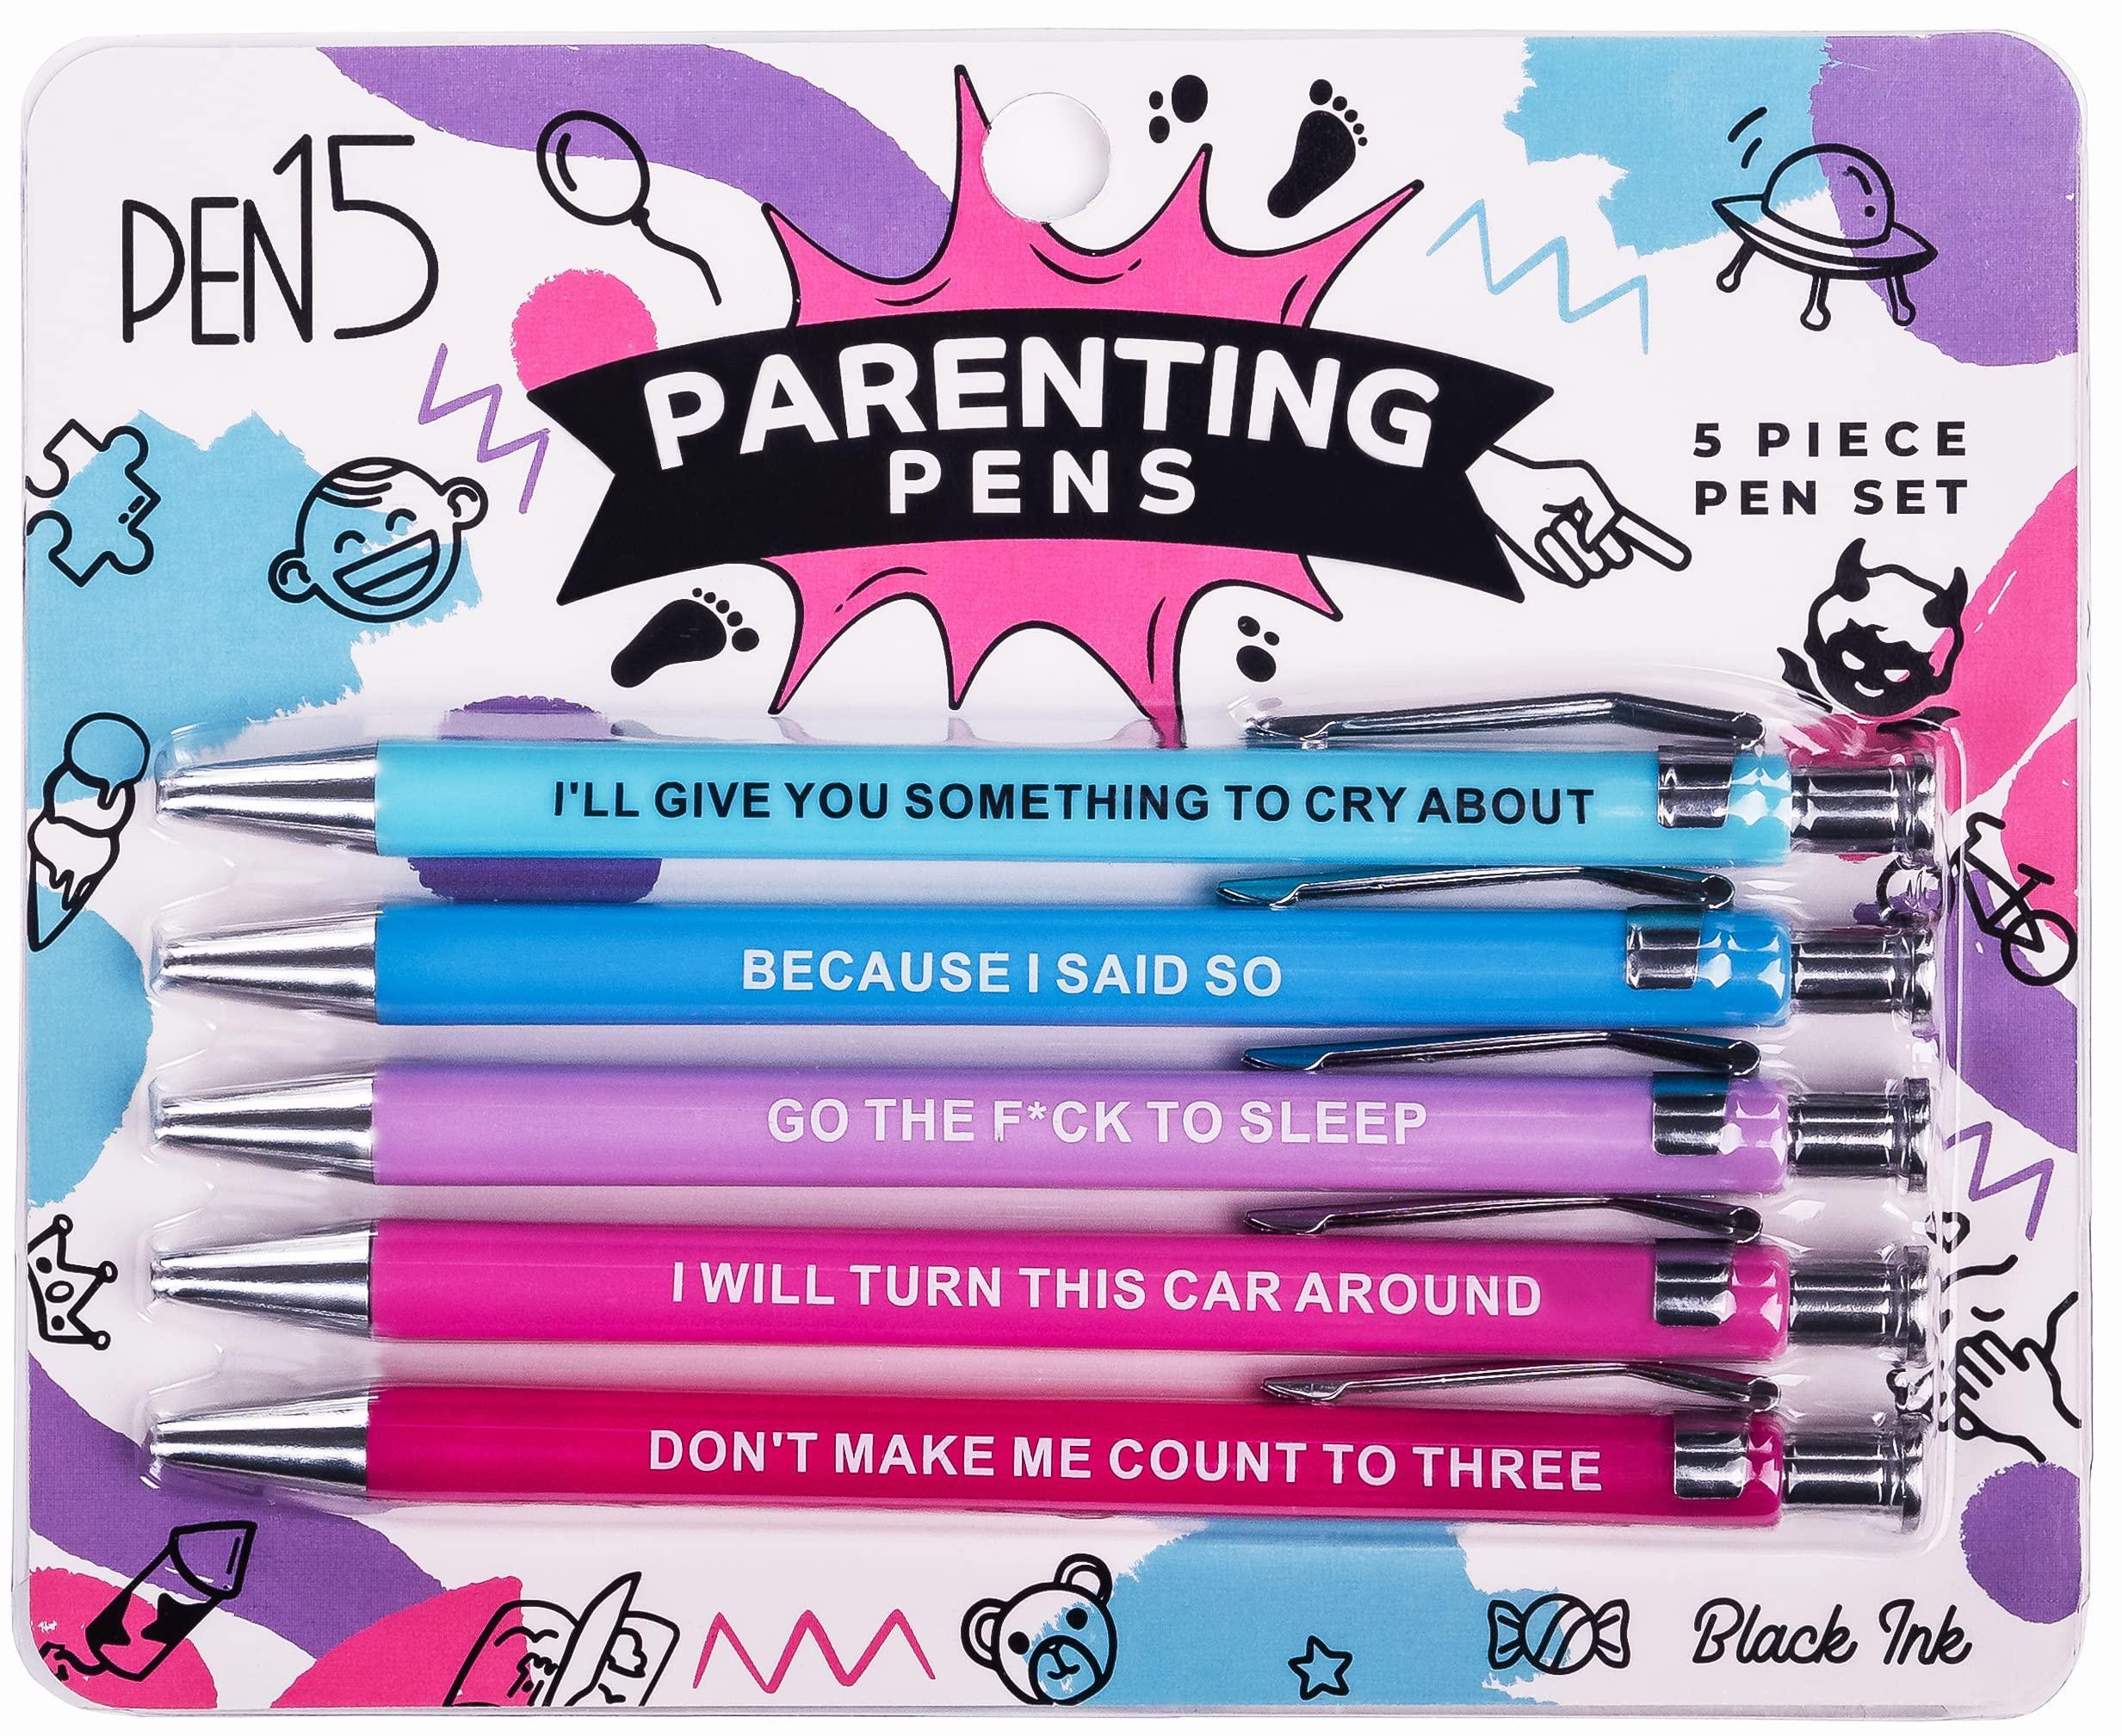 RNAB0B4R5SKP6 milktoast brands funny parenting pens, a snarky gag